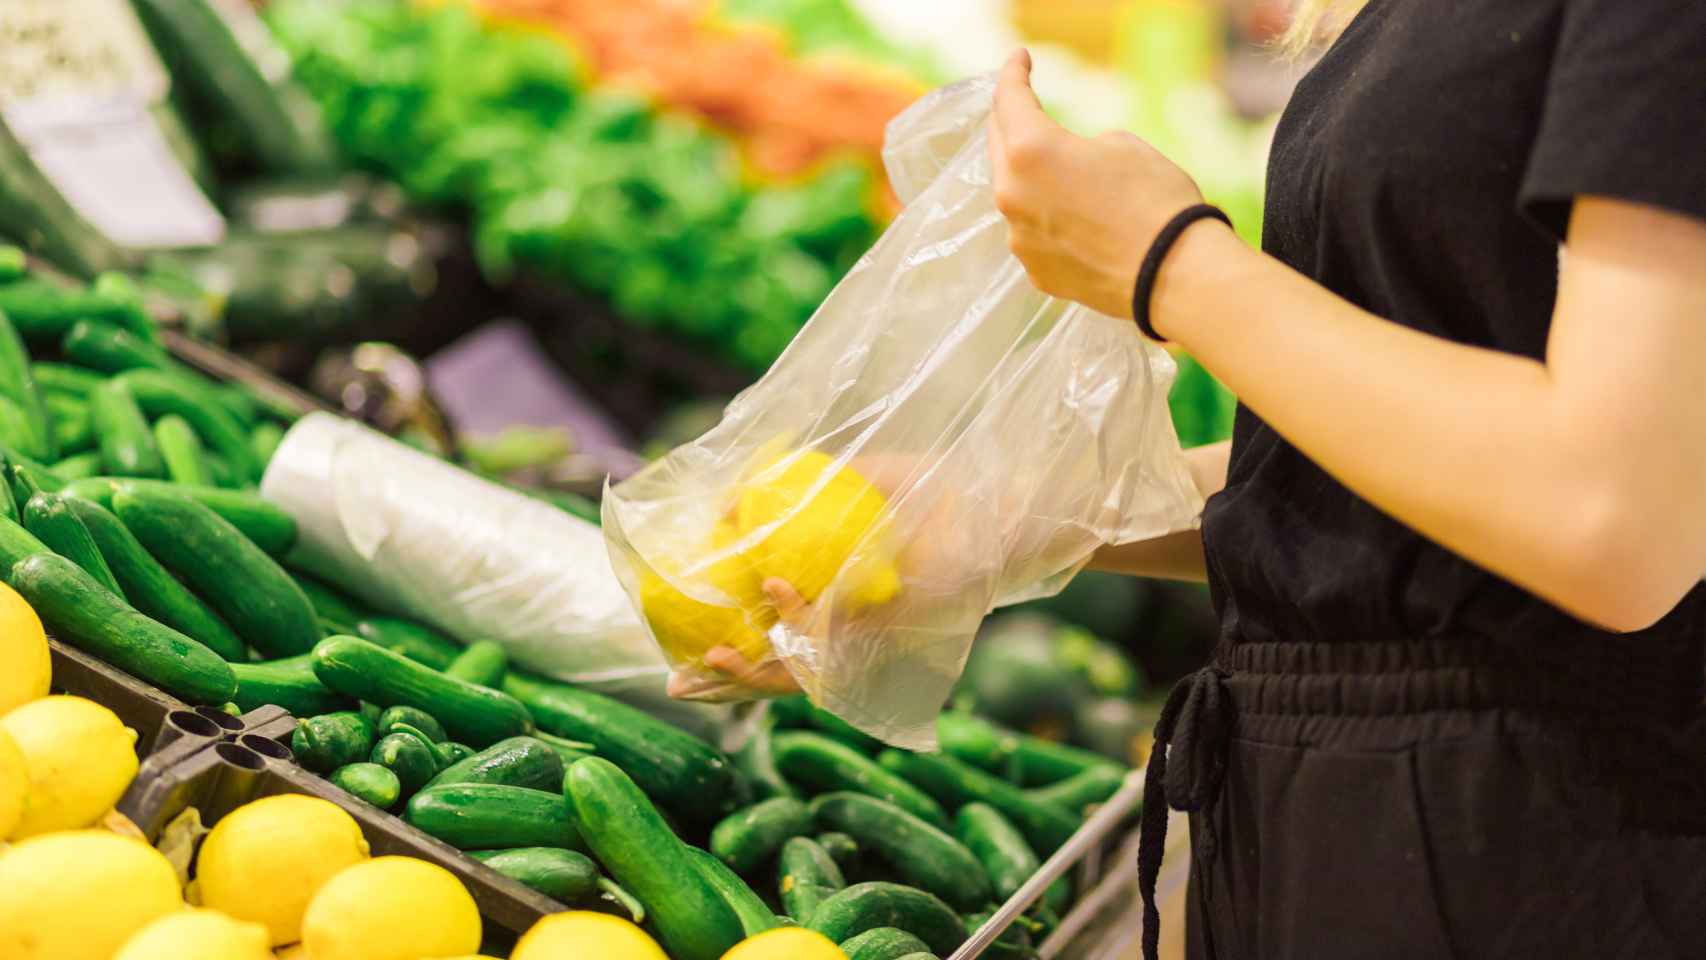 Extranjero Abrazadera es bonito Cómo abrir bolsas de plástico del supermercado sin quitarte los guantes